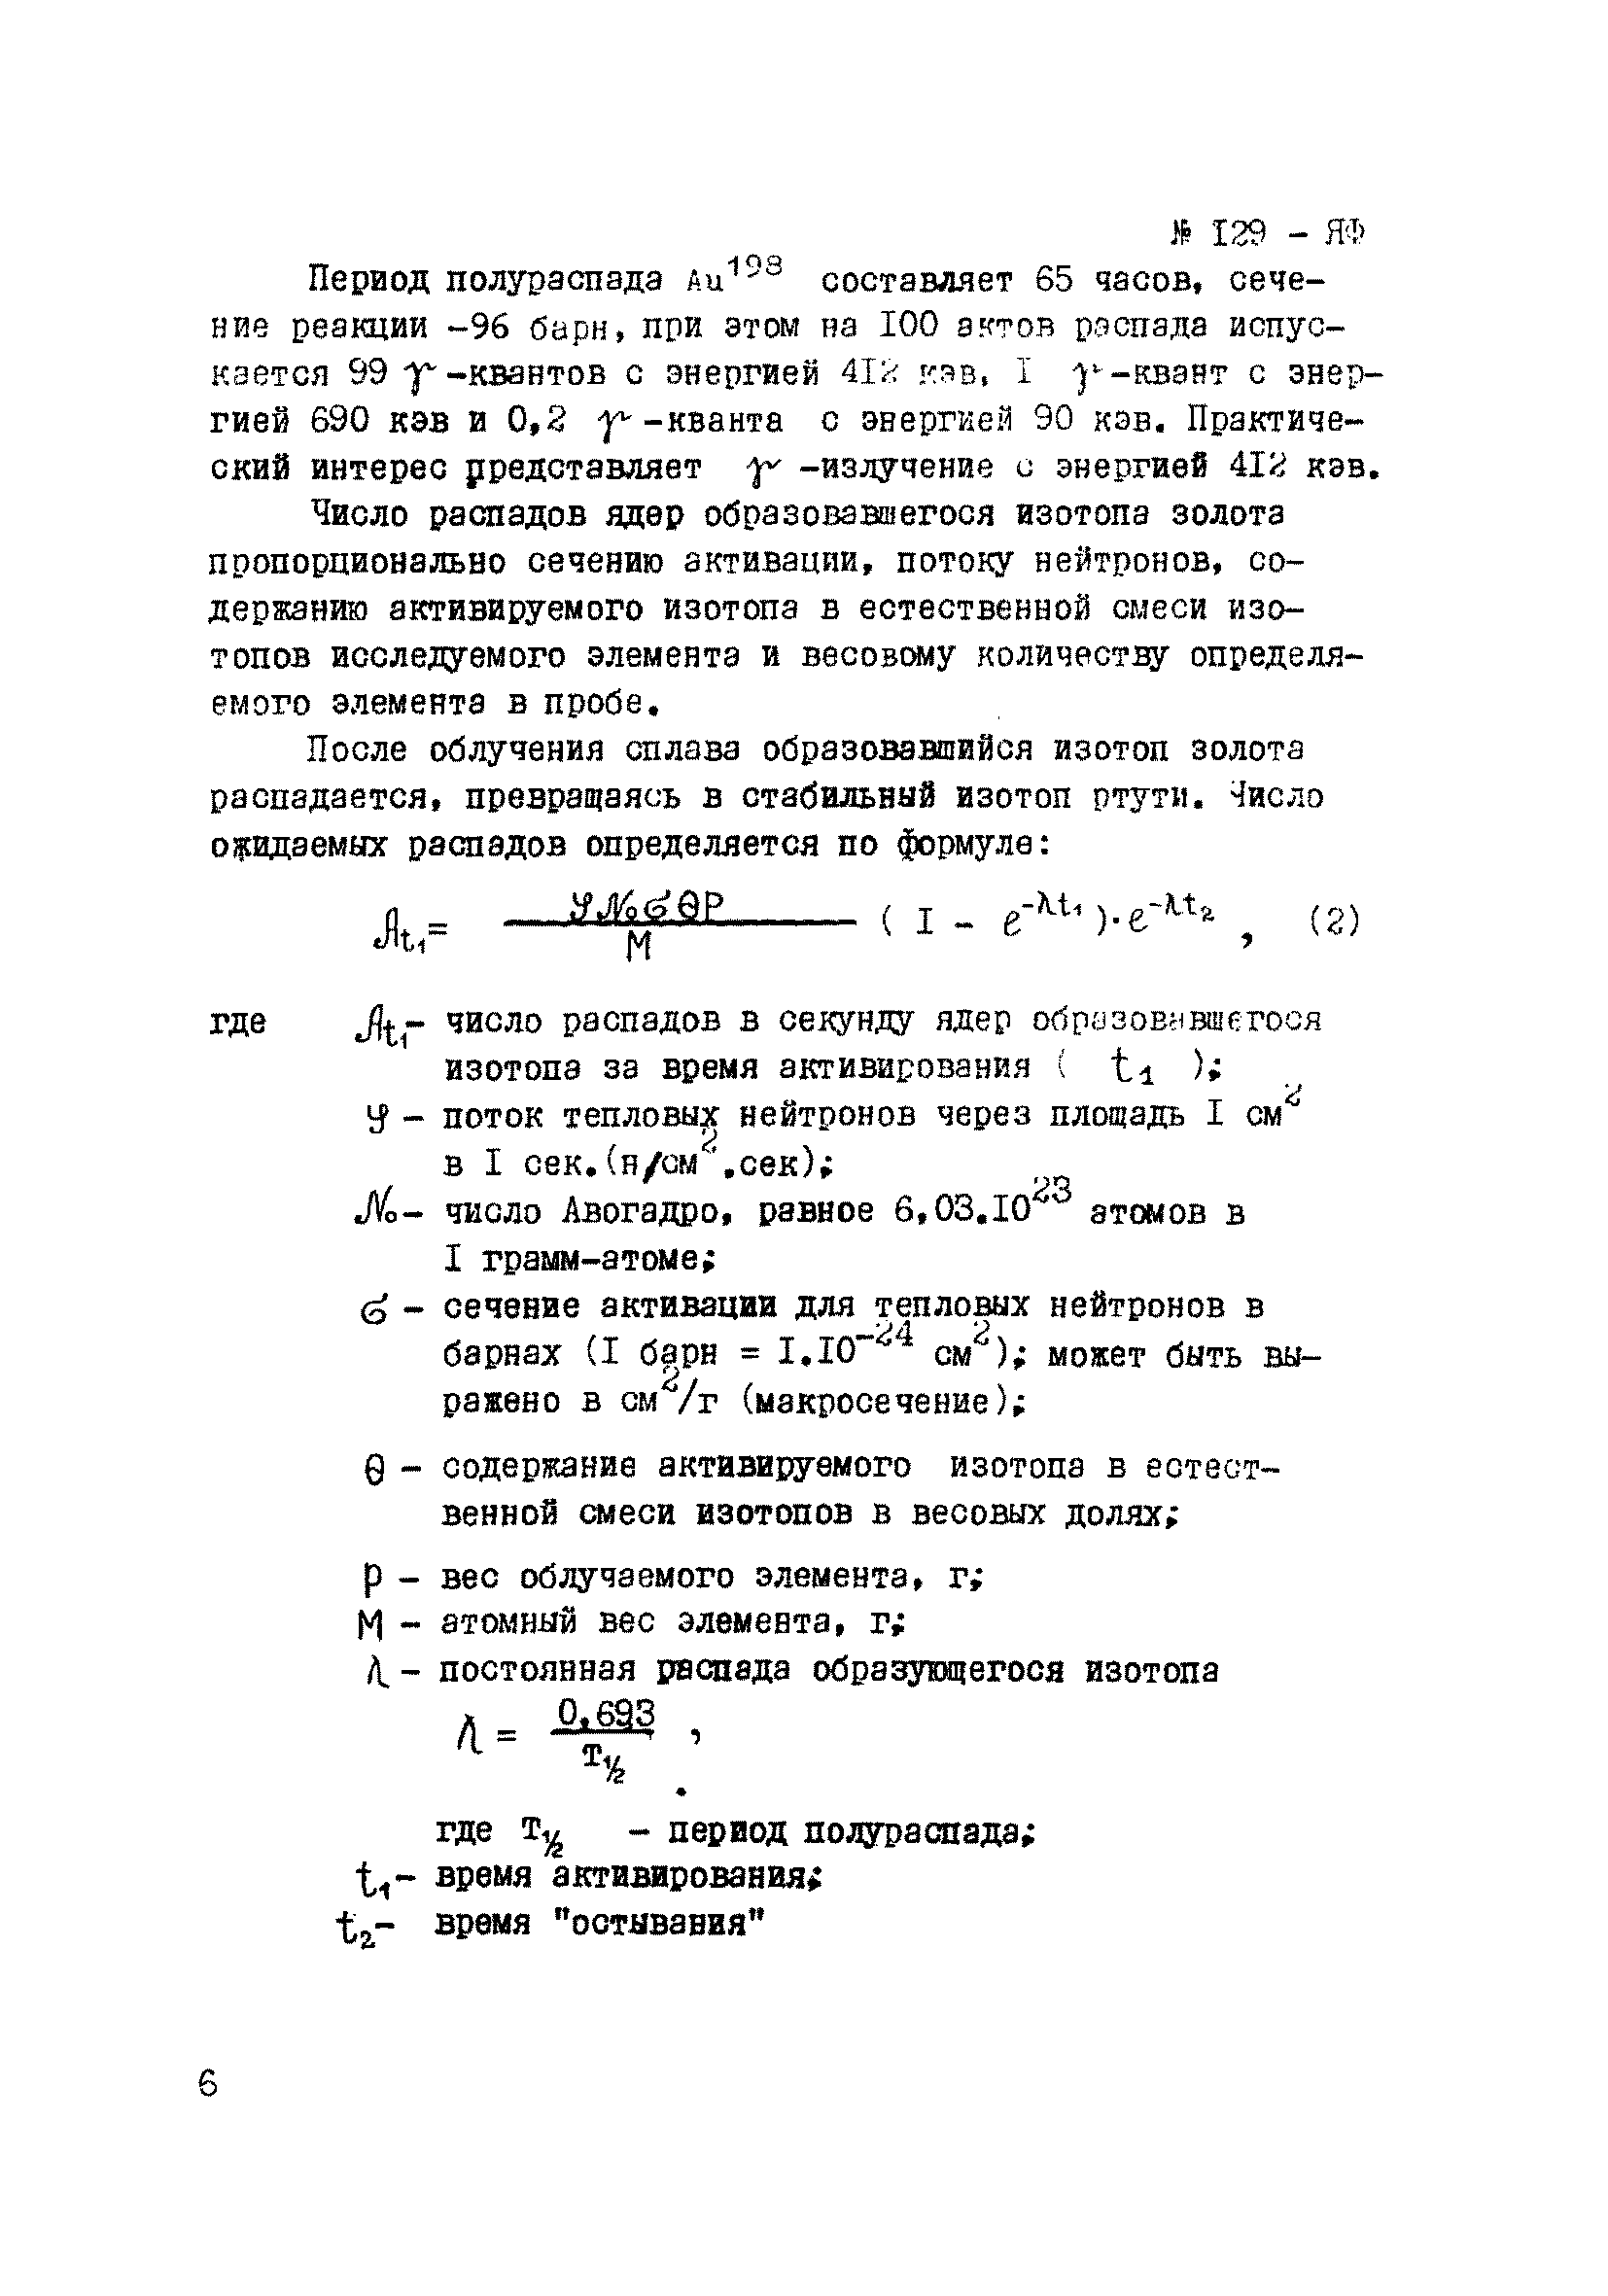 Инструкция НСАМ 129-ЯФ